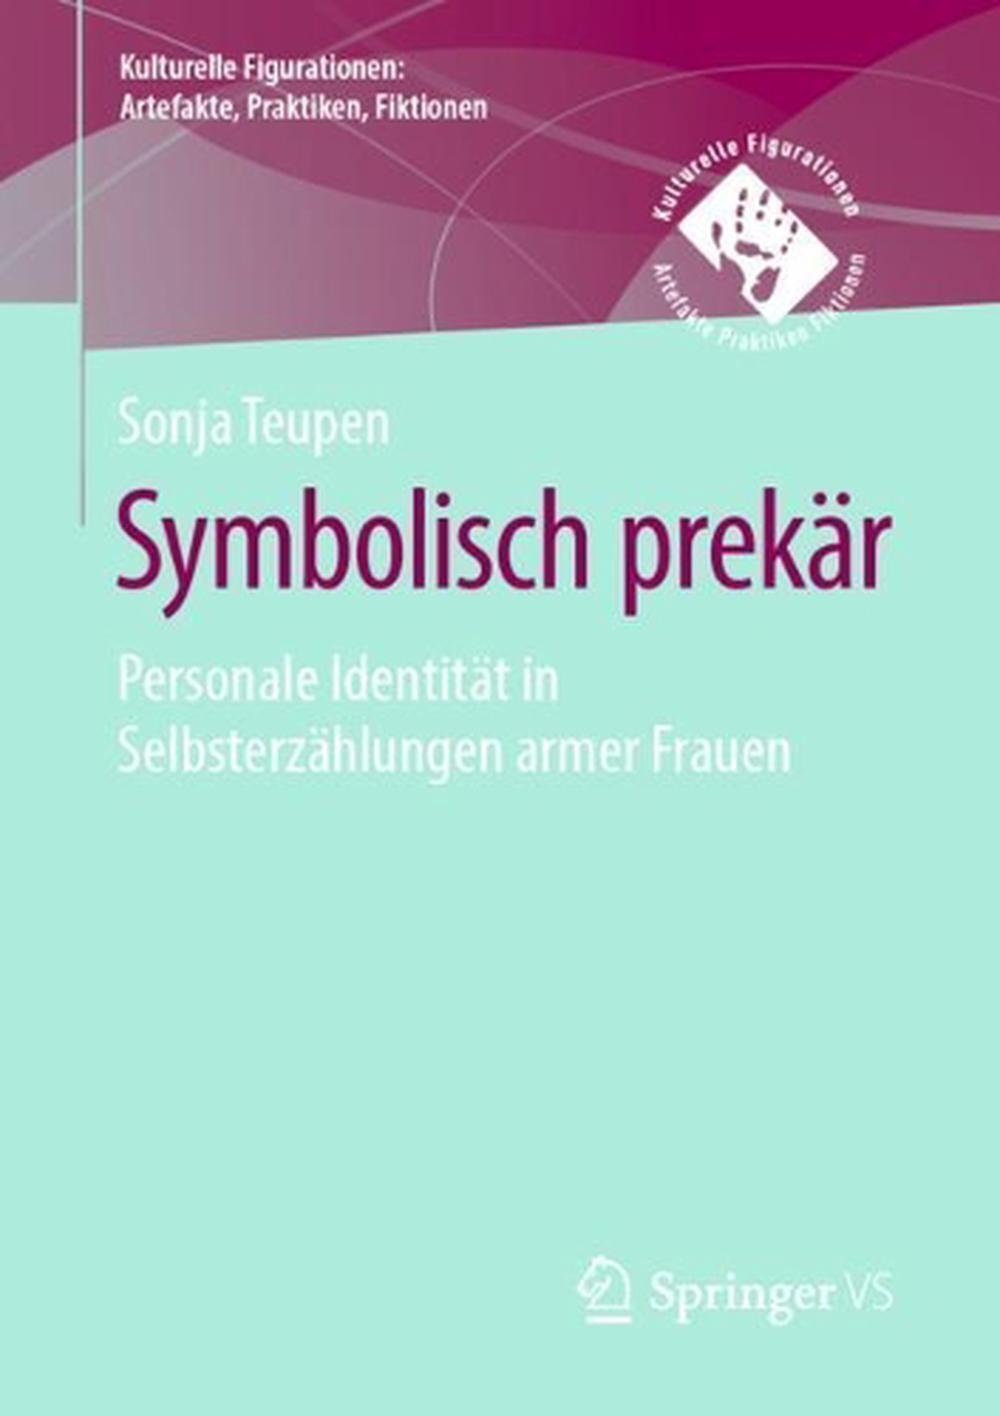 Symbolisch prekr: Personale Identit?t in Selbsterz?hlungen armer Frauen by Sonja